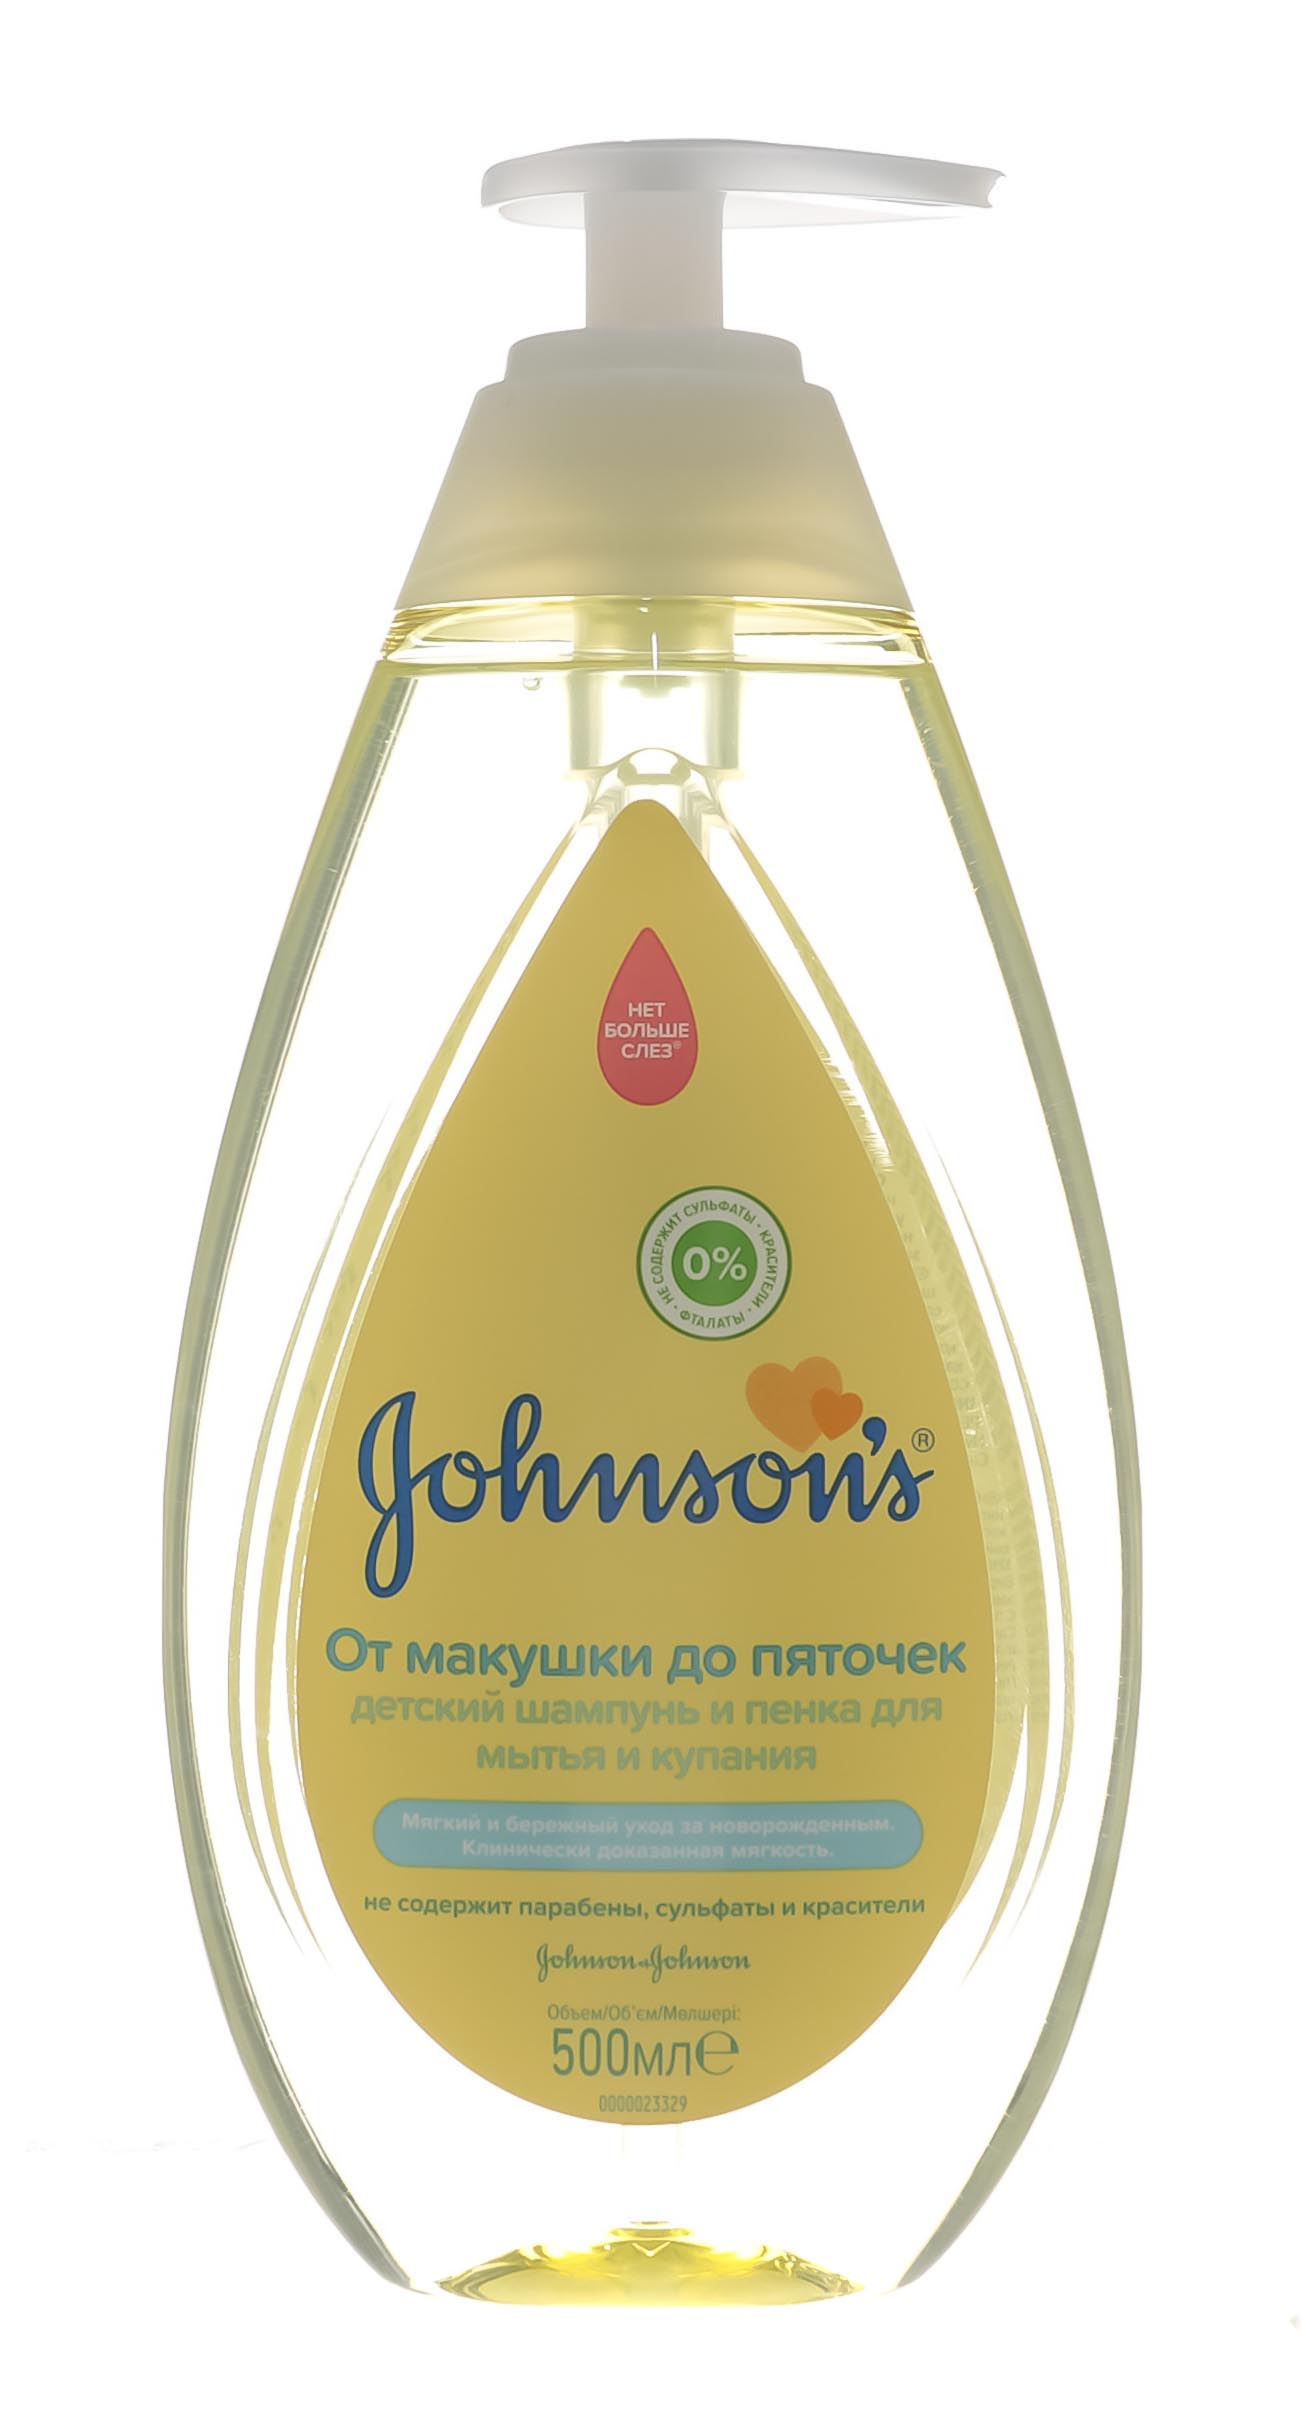 Johnsons Детский шампунь и пенка «От макушки до пяточек» для мытья и купания, 500 мл (Johnsons, Для волос)